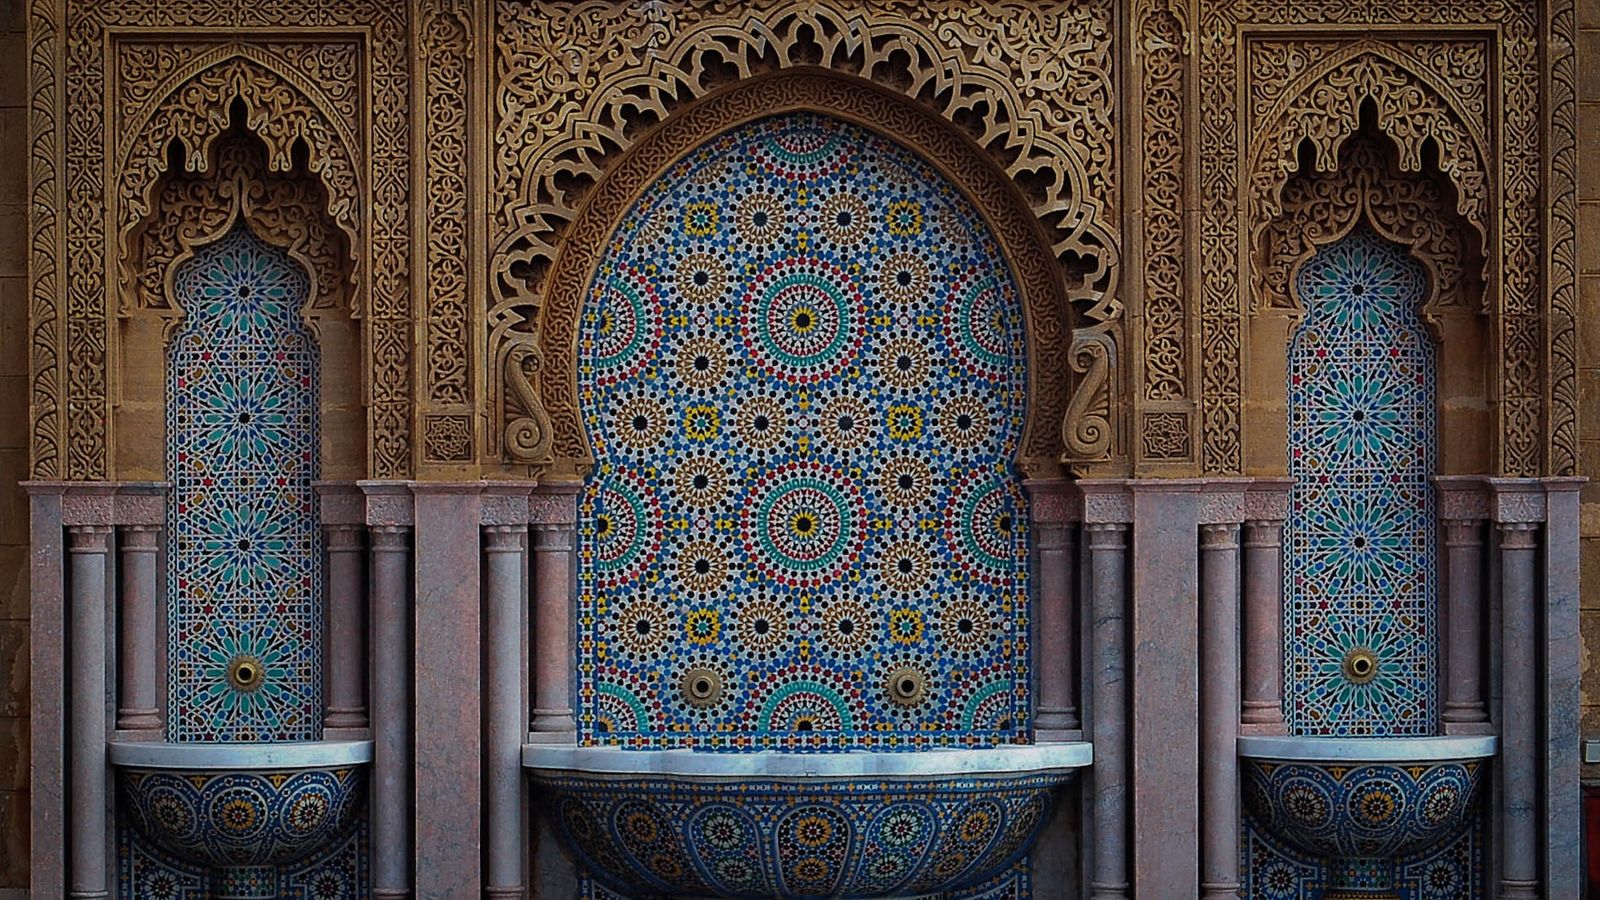 Free download wallpaper casablanca marocco Morocco Mosaic desktop wallpaper [1600x1000] for your Desktop, Mobile & Tablet. Explore Morocco Wallpaper. Wallpaper Moroccan, Moroccan Design Wallpaper, Gray Moroccan Wallpaper